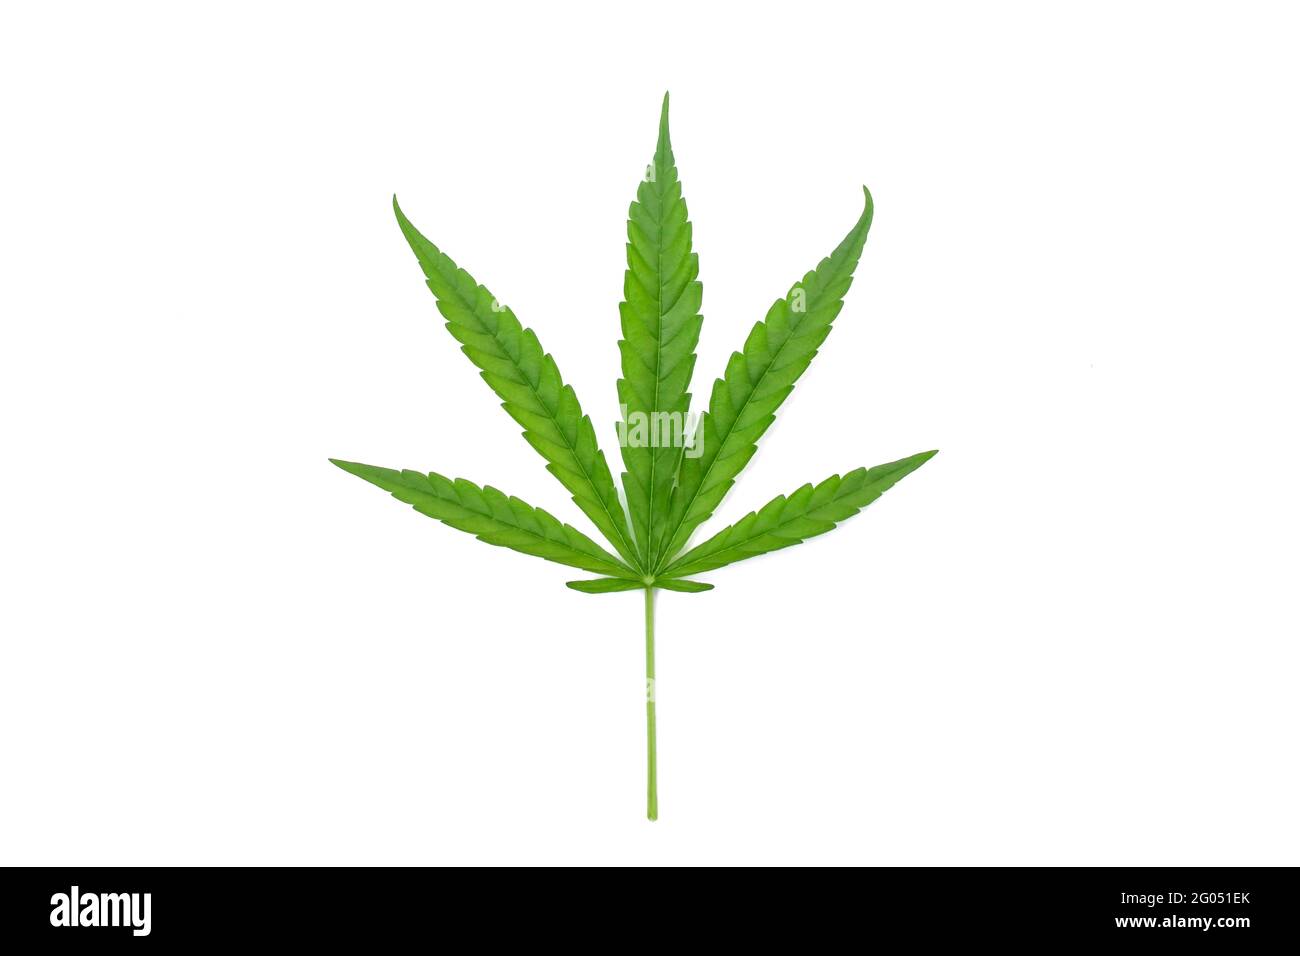 Grüne Cannabisblätter isoliert auf weißem Hintergrund. Konzept des Anbaus von Cannabis und medizinischen Cannabisblättern. Stockfoto